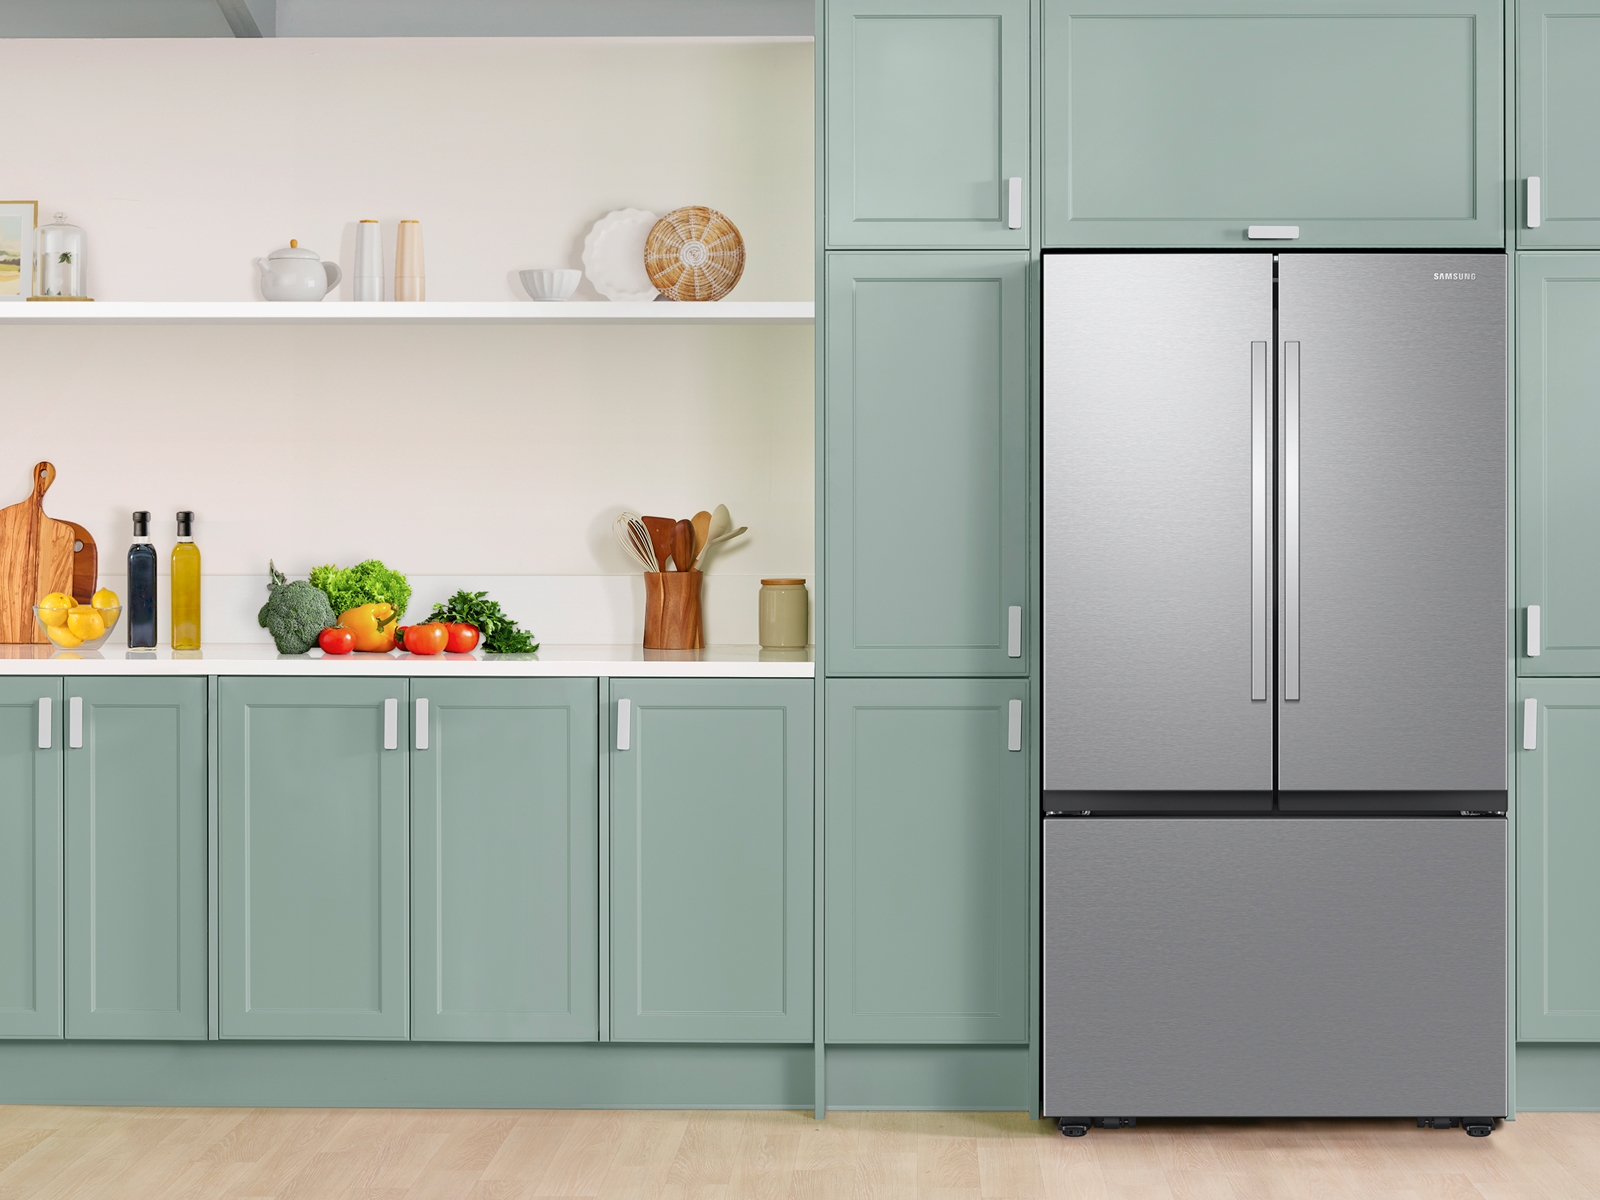 Kitchen Details 2 Pack Slim Refrigerator Storage Bins